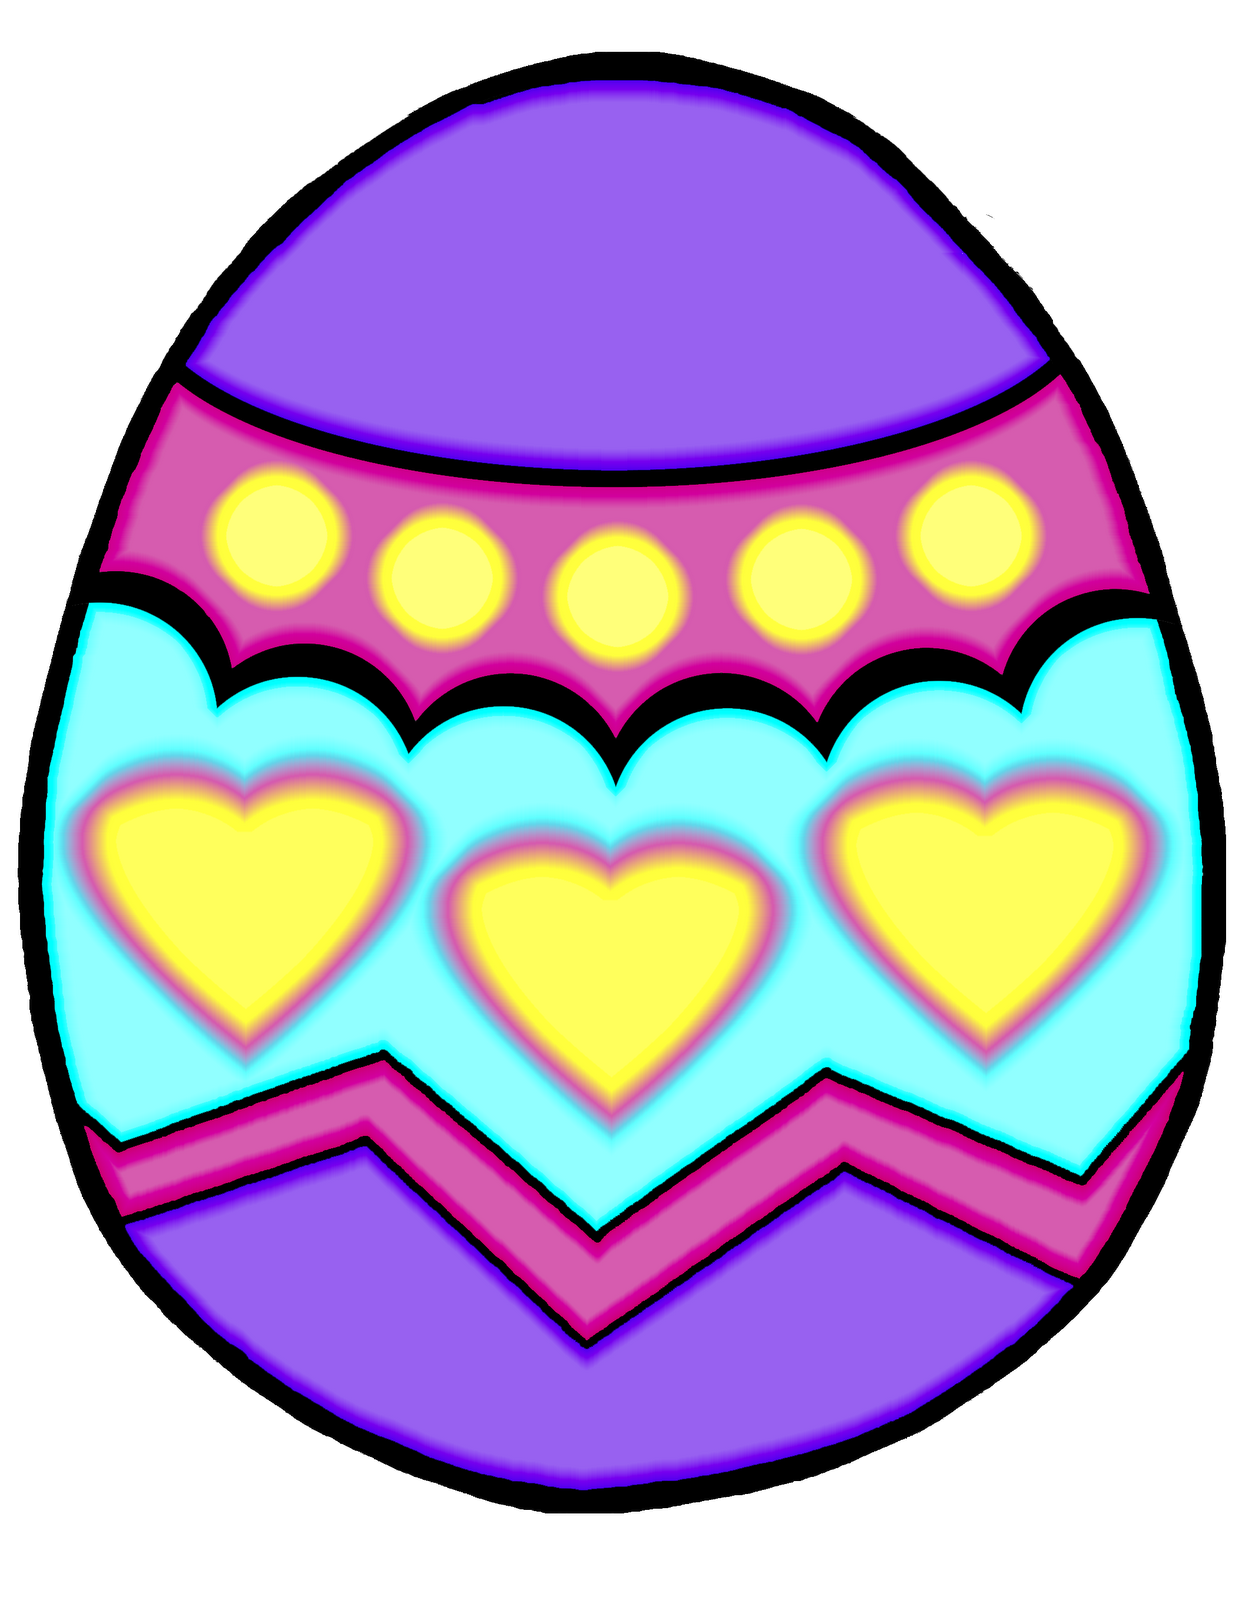 Easter Egg Clip Art - Easter Eggs Clip Art